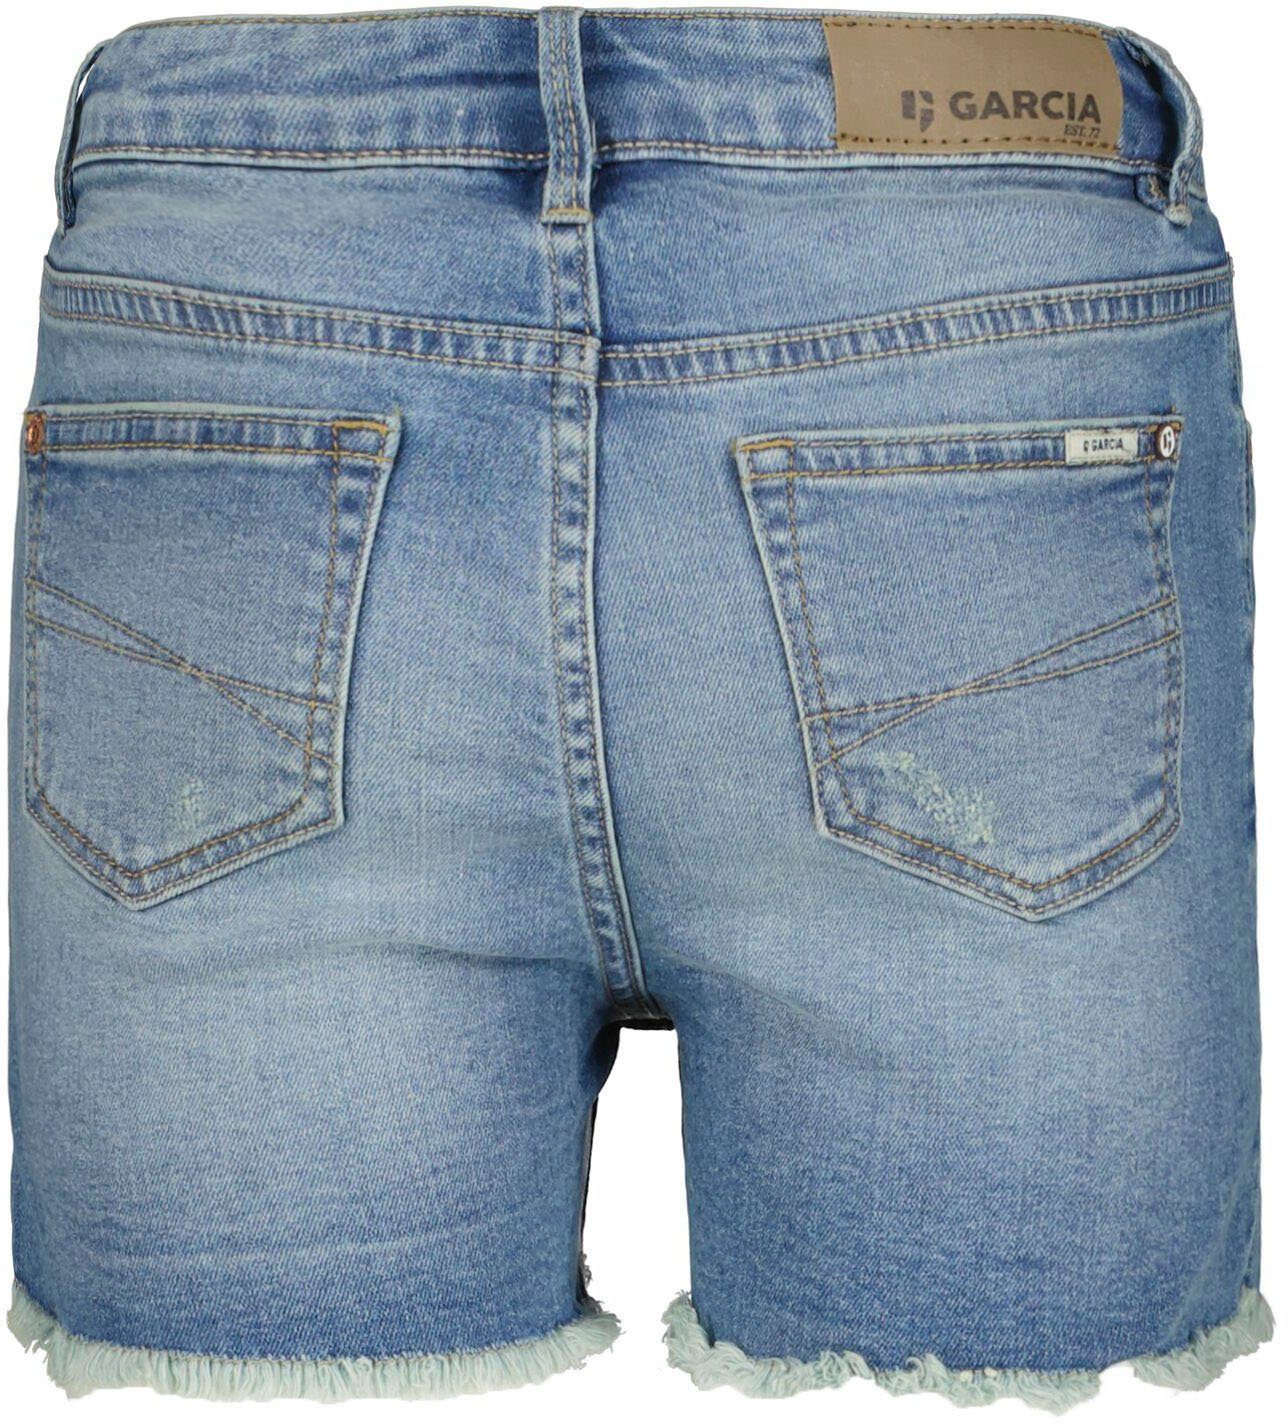 Shorts Girls vintage Rianna used Garcia für